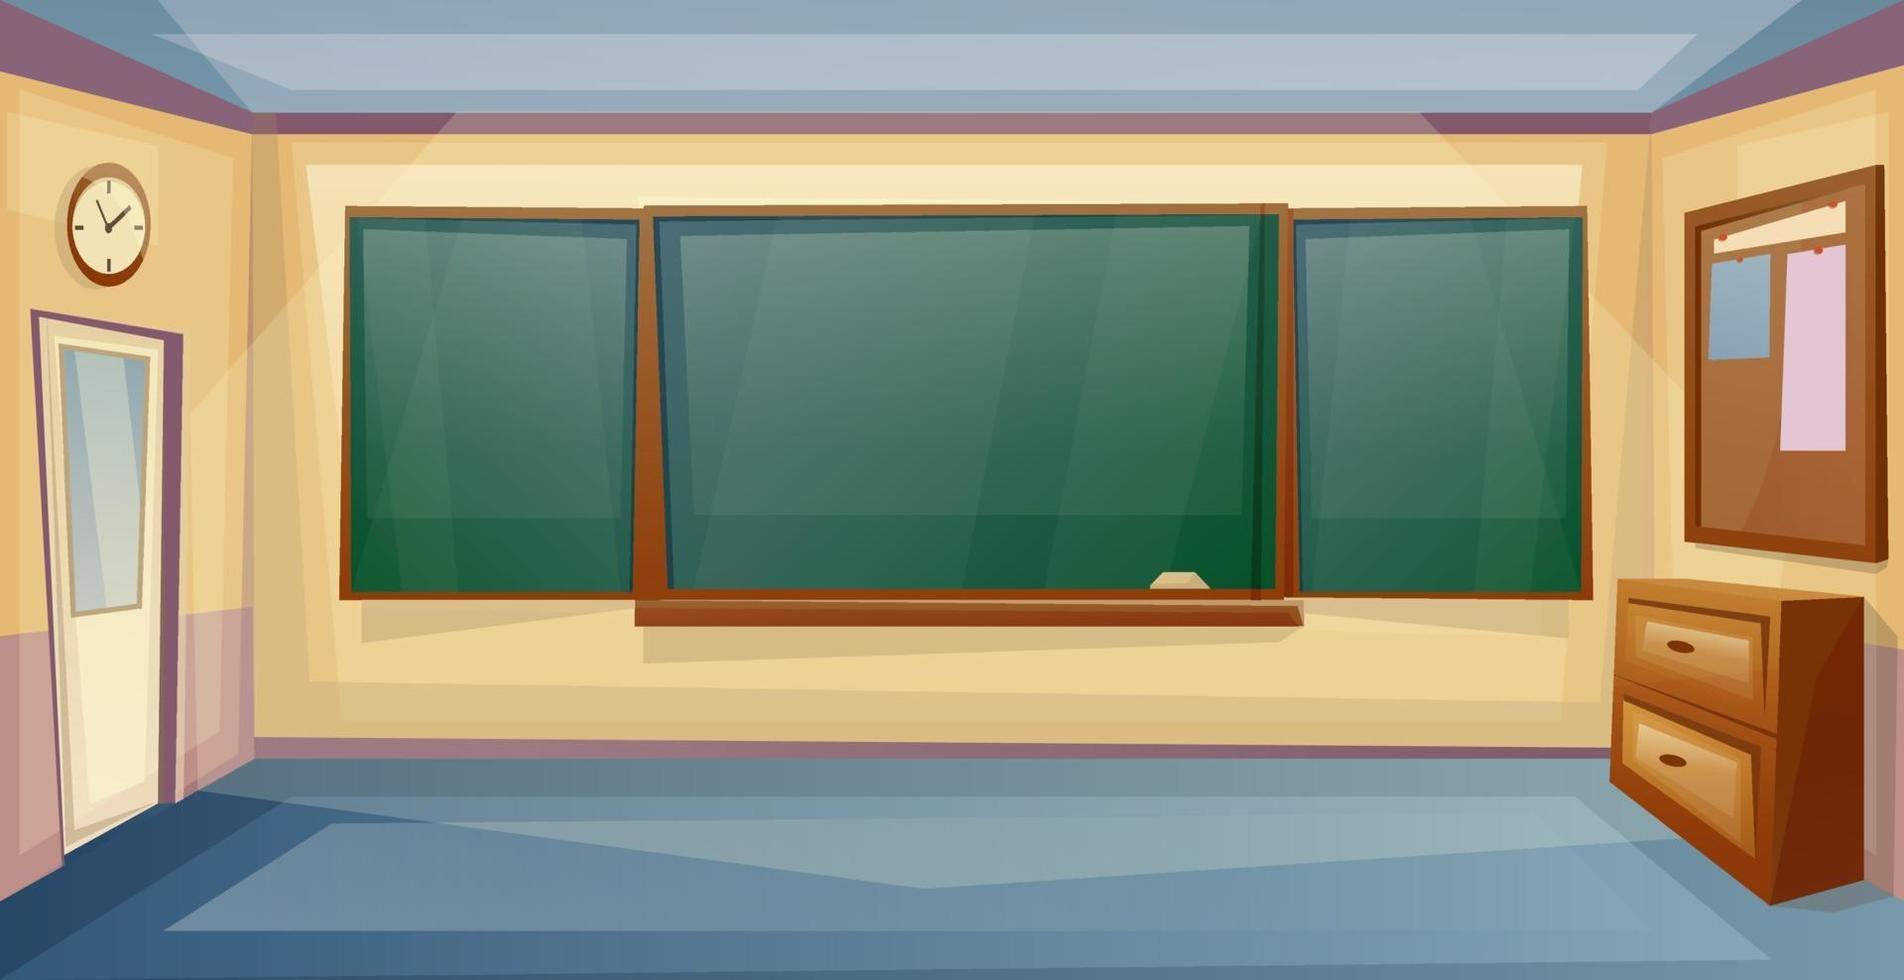 intérieur de la salle de classe de l'école avec bureau et tableau. leçon. vide, université, room., vecteur, dessin animé vecteur